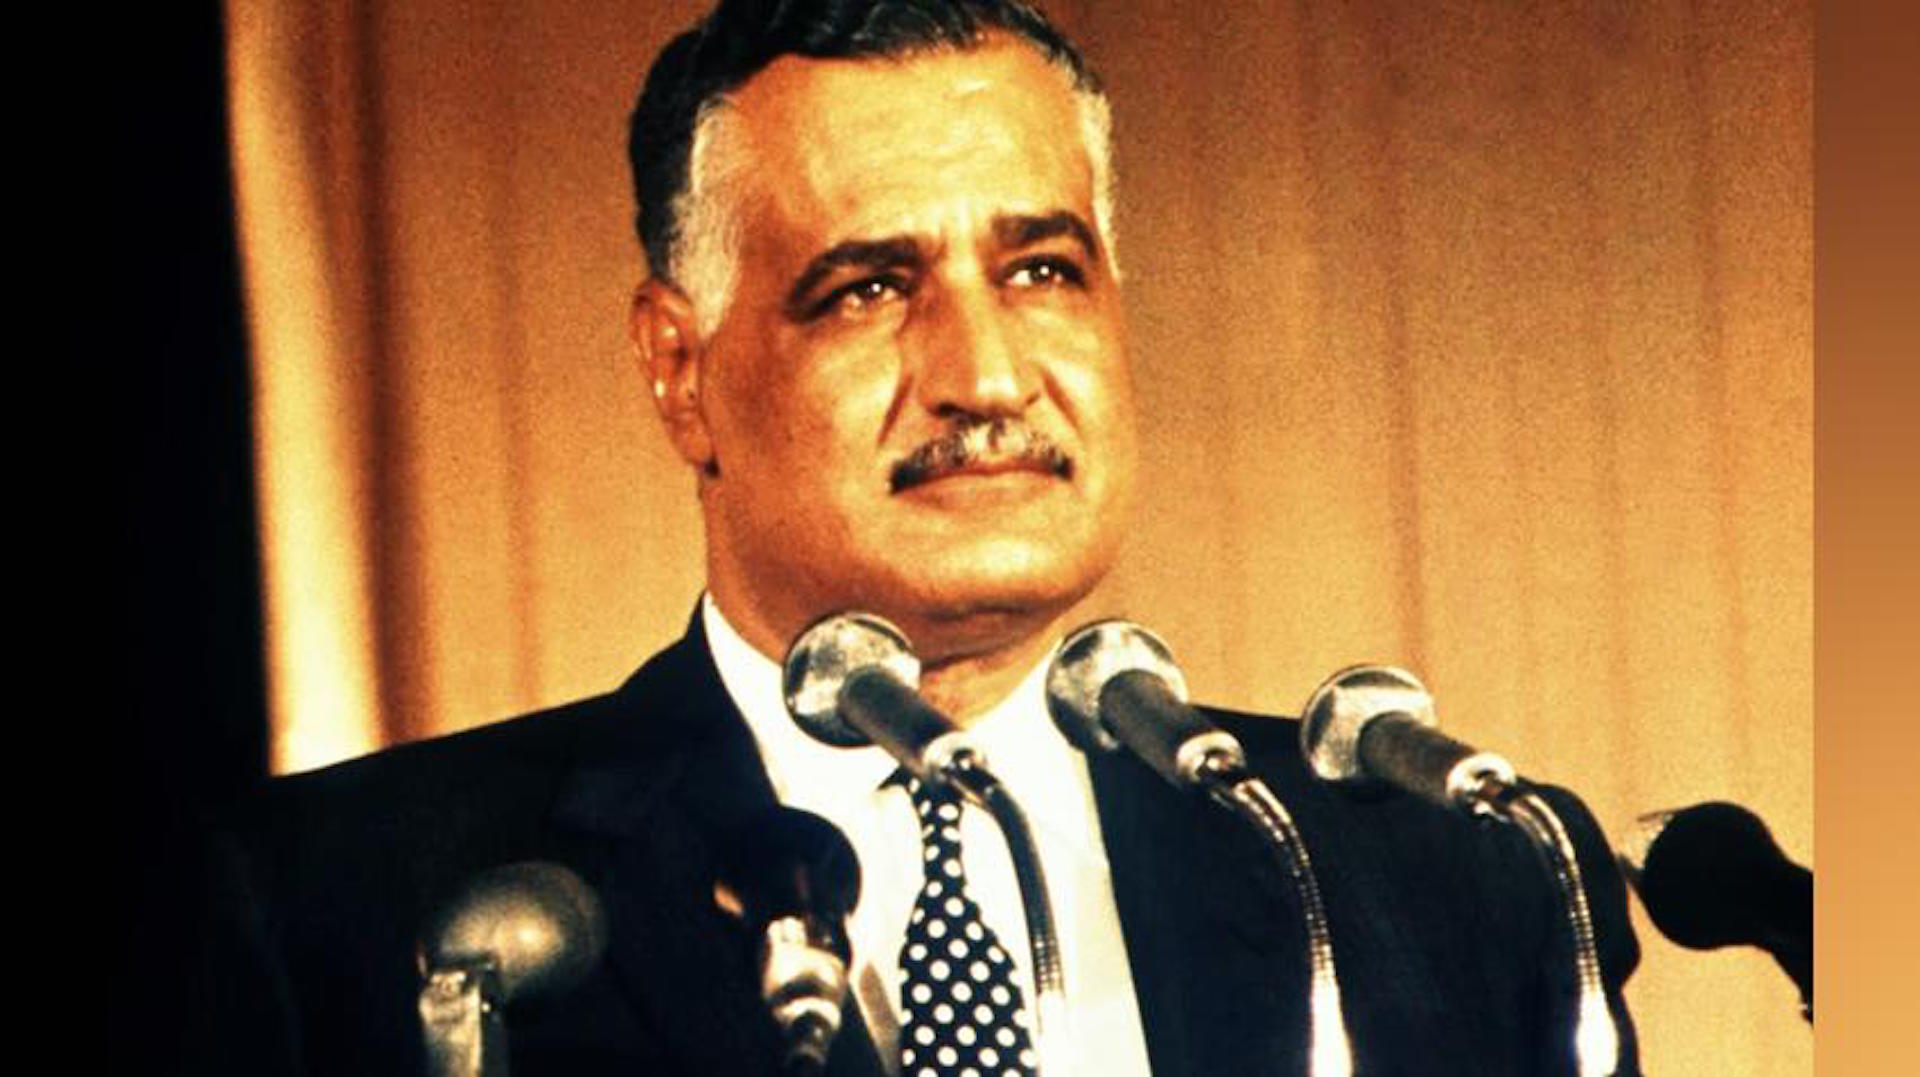 عبد الناصر في ذكرى يونيو 67 والتحدي ضد الإخوان: إرادة قوية لقيادة مصر نحو الاستقرار